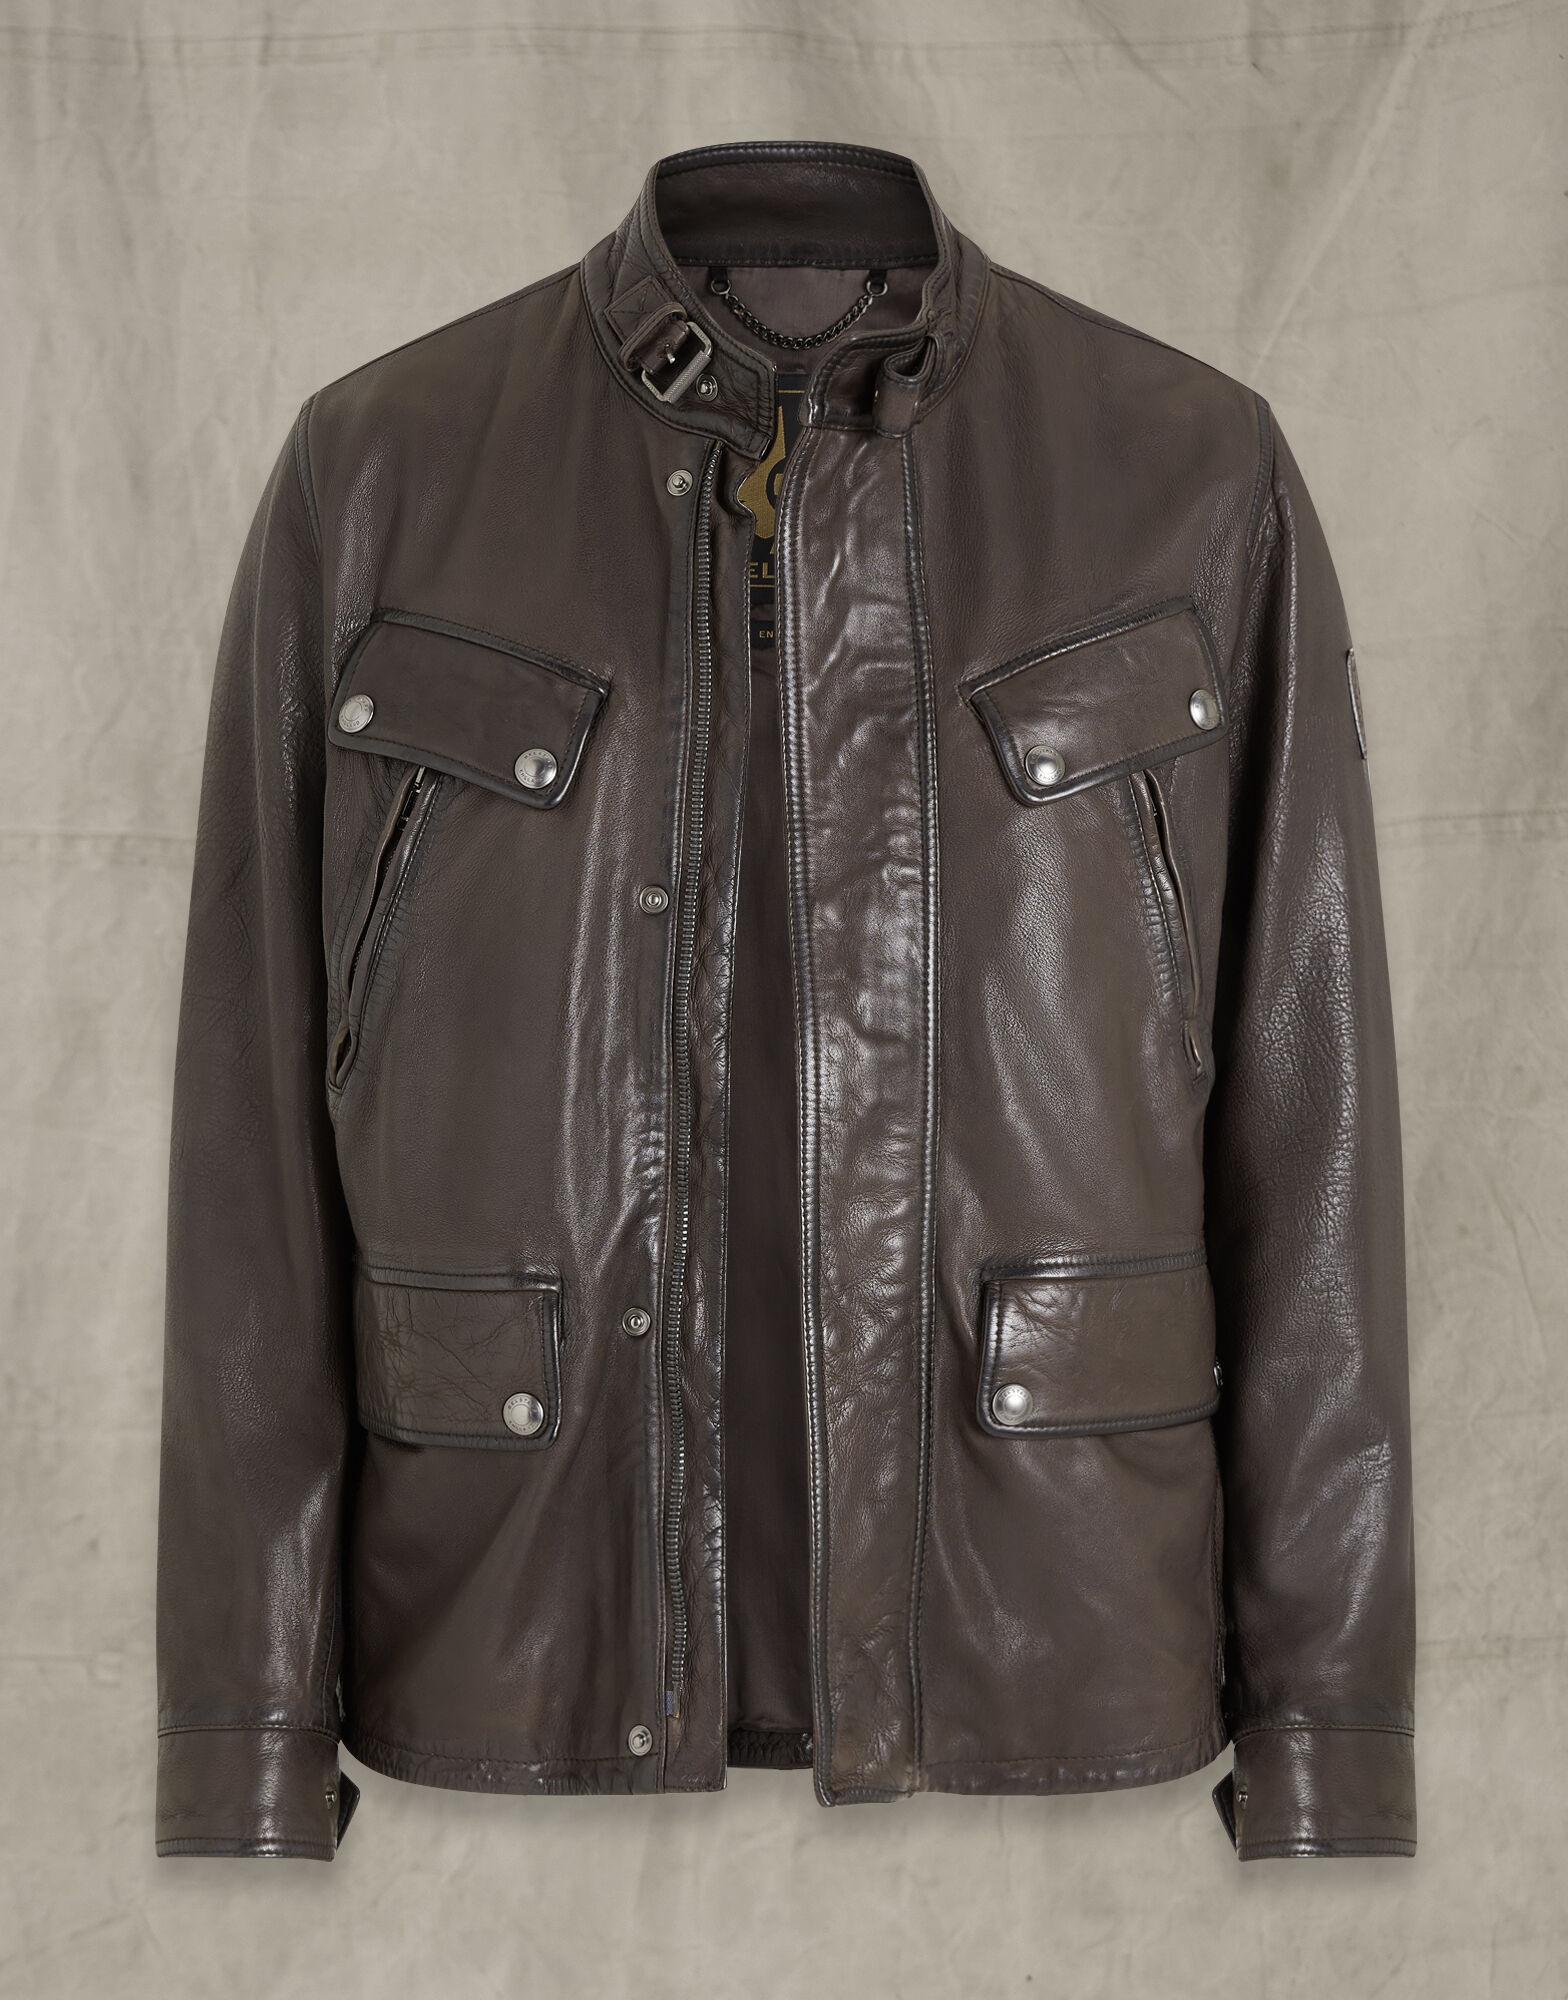 Belstaff Denesmere Leather Jacket for Men - Lyst